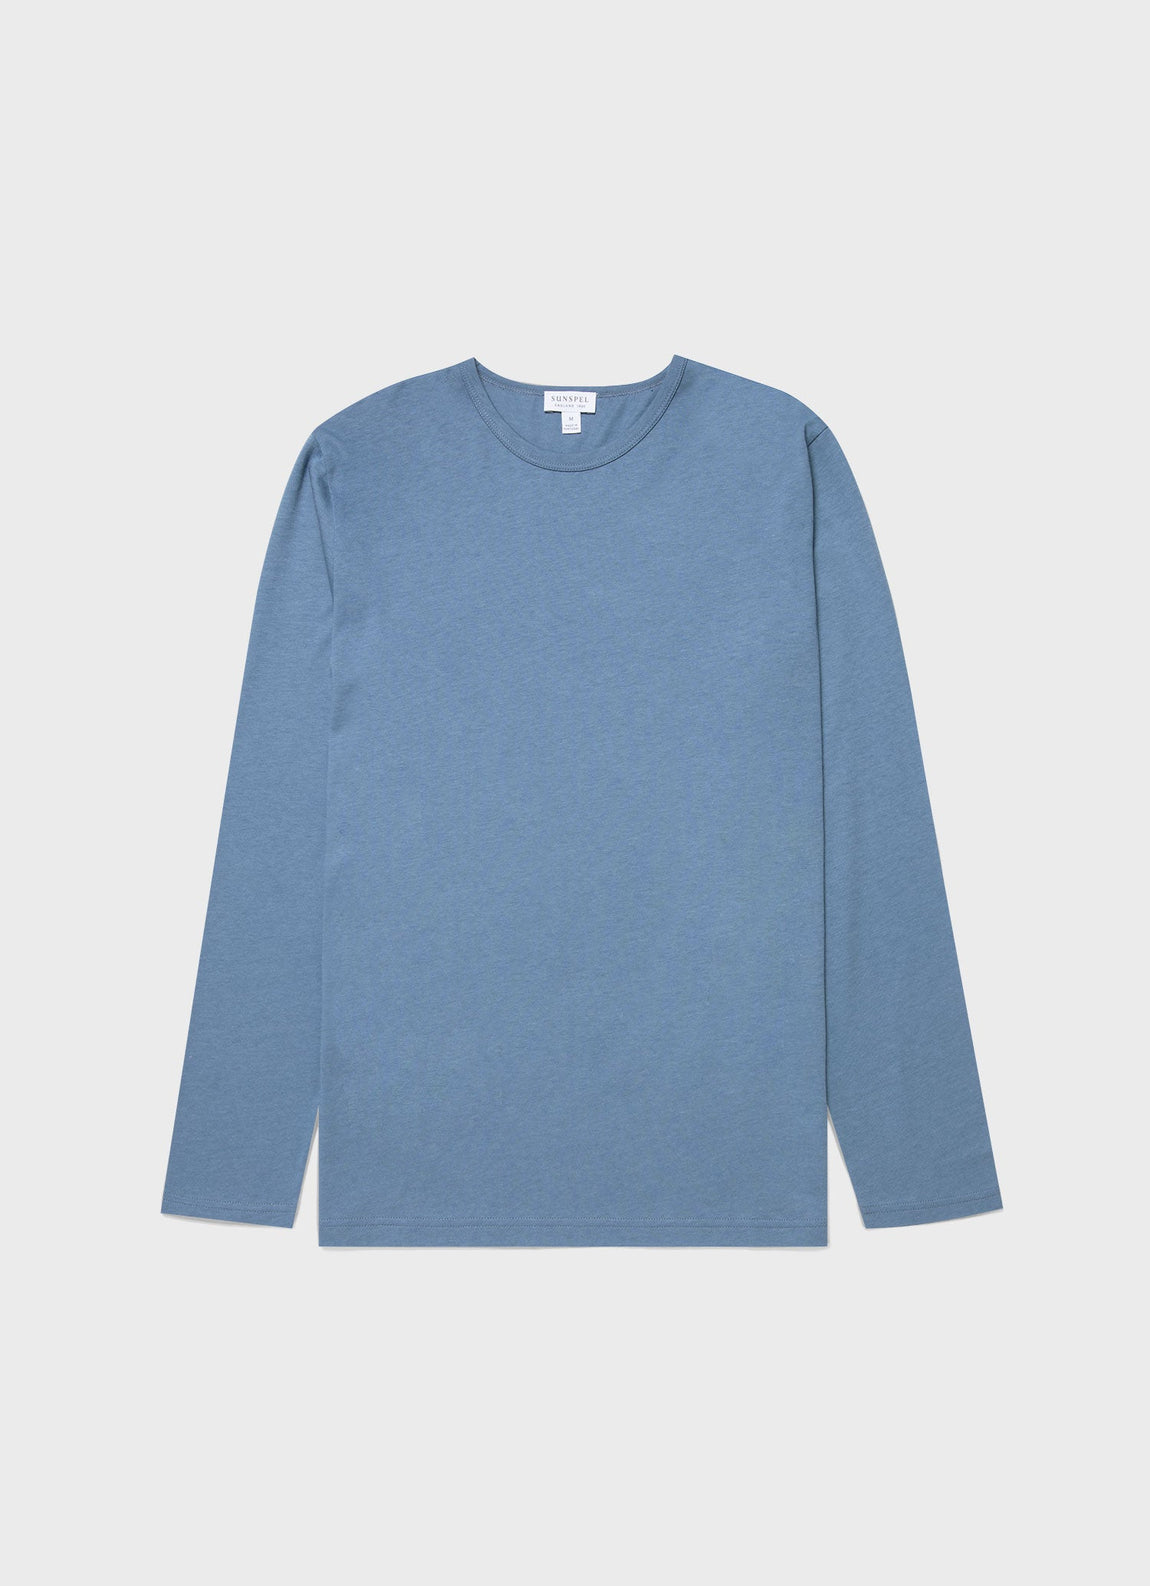 Men's Cotton Modal Lounge Long Sleeve T-shirt in Bluestone